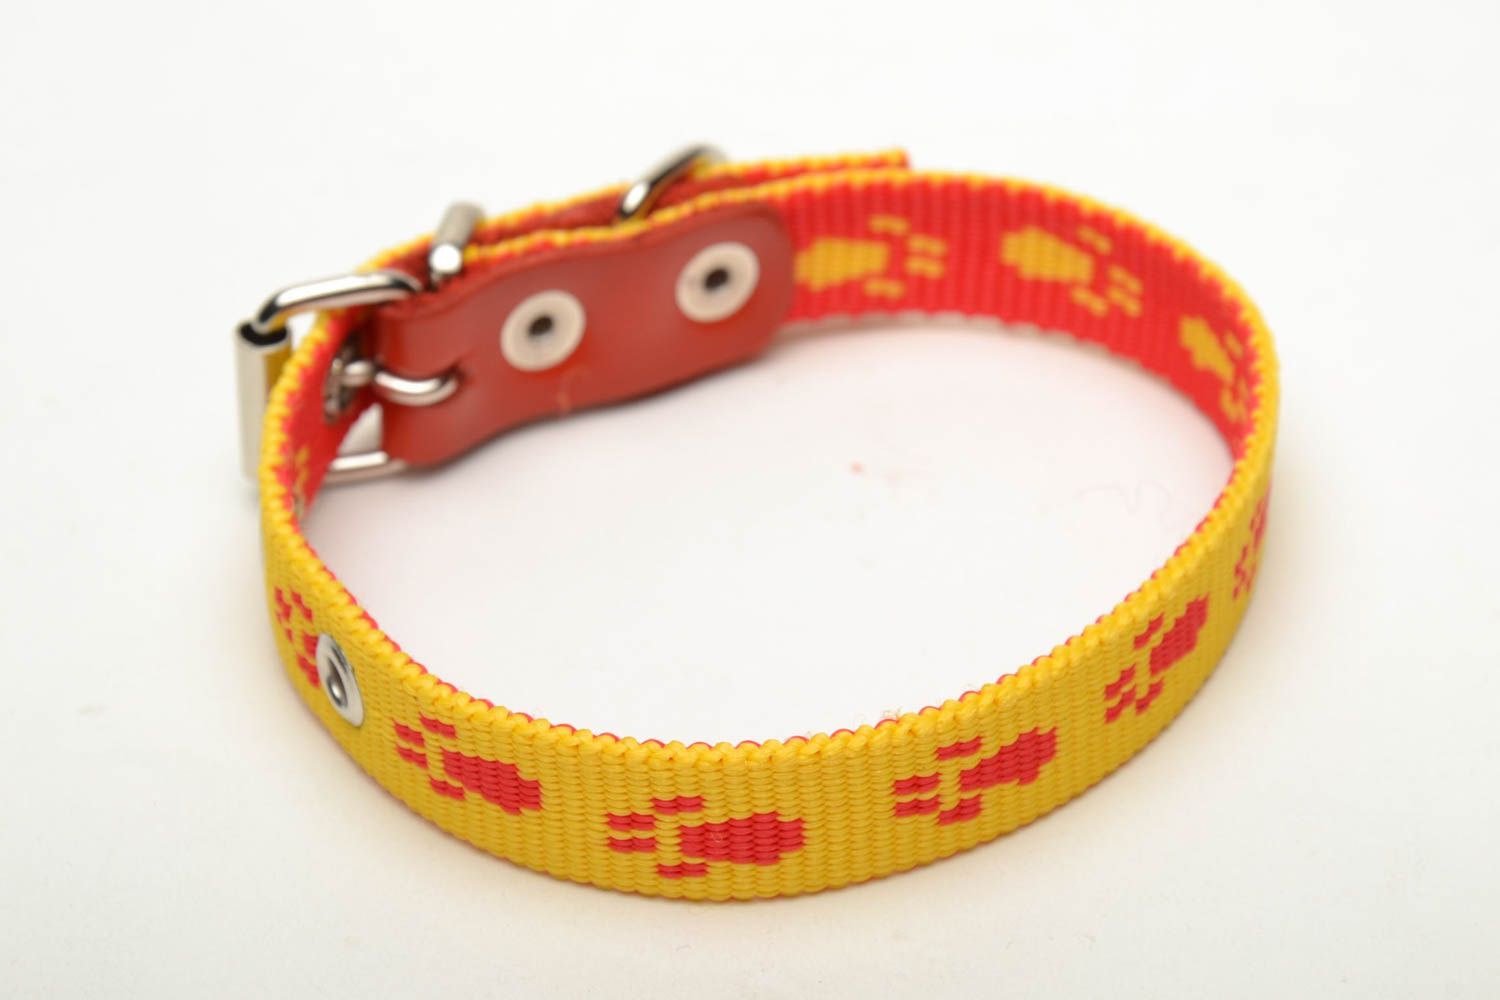 Textil Halsband für Hund in Gelb foto 3